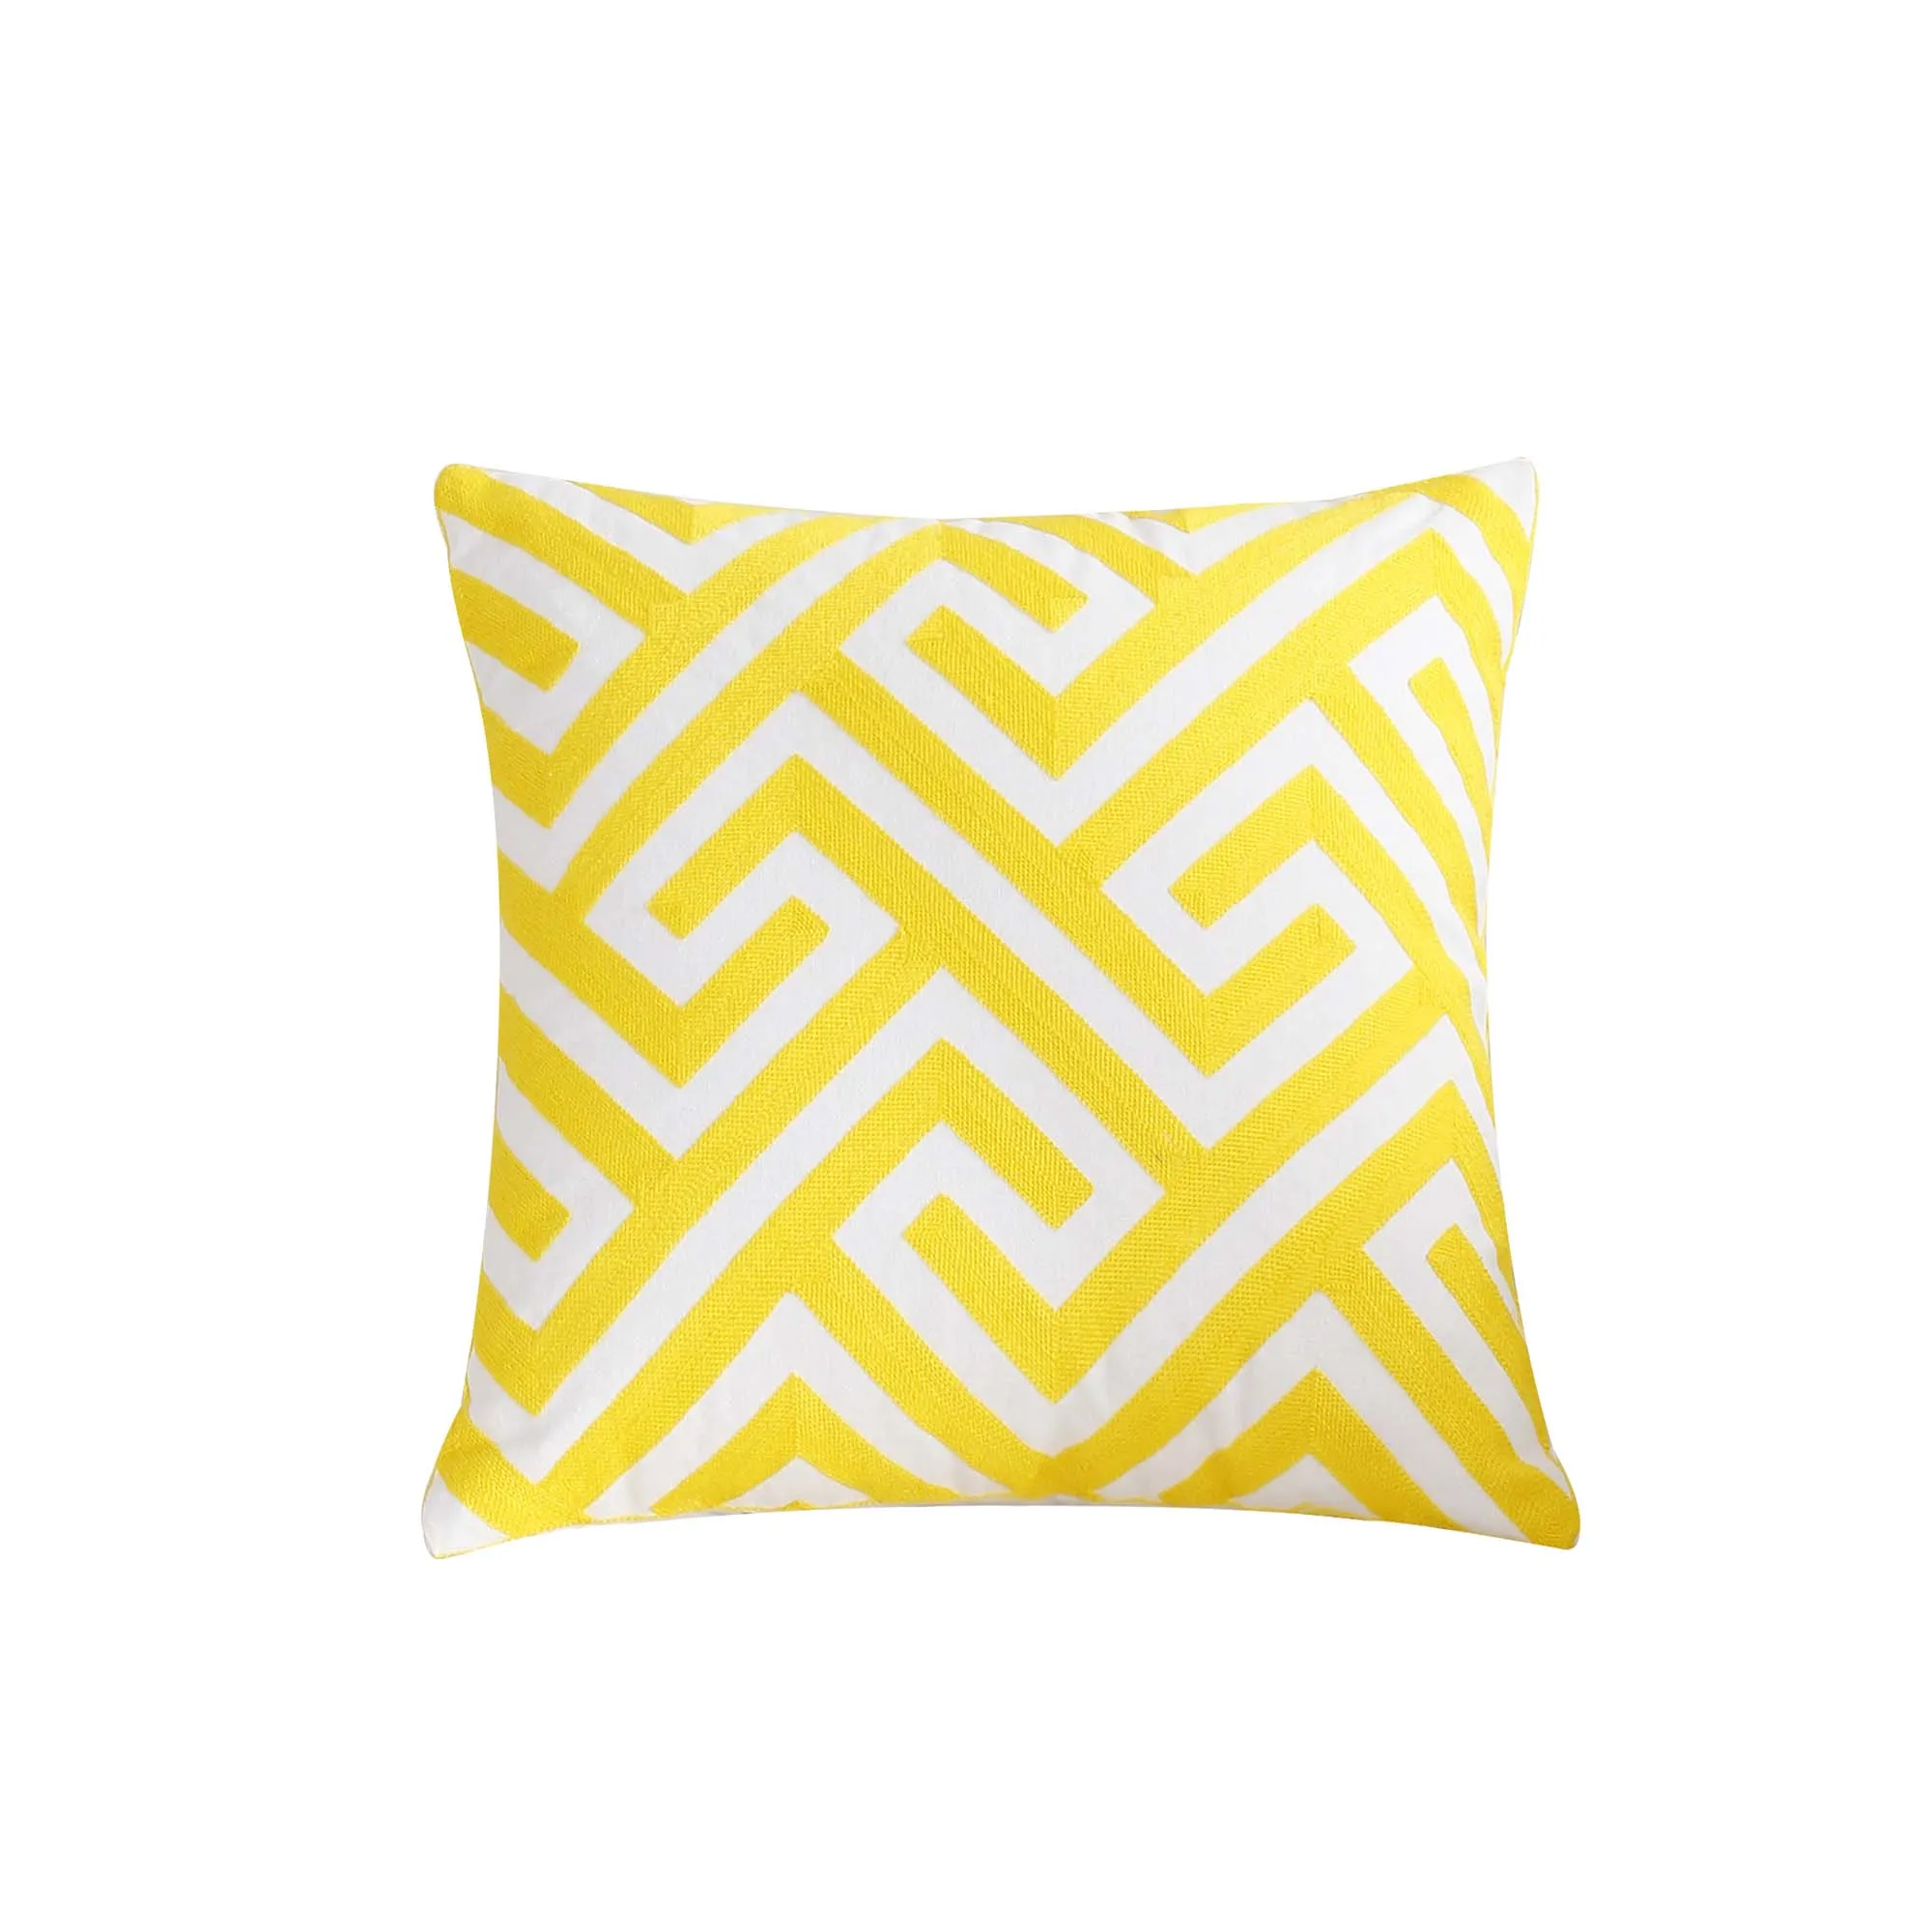 Толстый чехол для подушки в скандинавском стиле, желтый чехол для подушки с вышивкой и геометрическим рисунком 45 см* 45 см, чехол для подушки для дома и офиса, автомобильные подушки - Цвет: Yellow-5